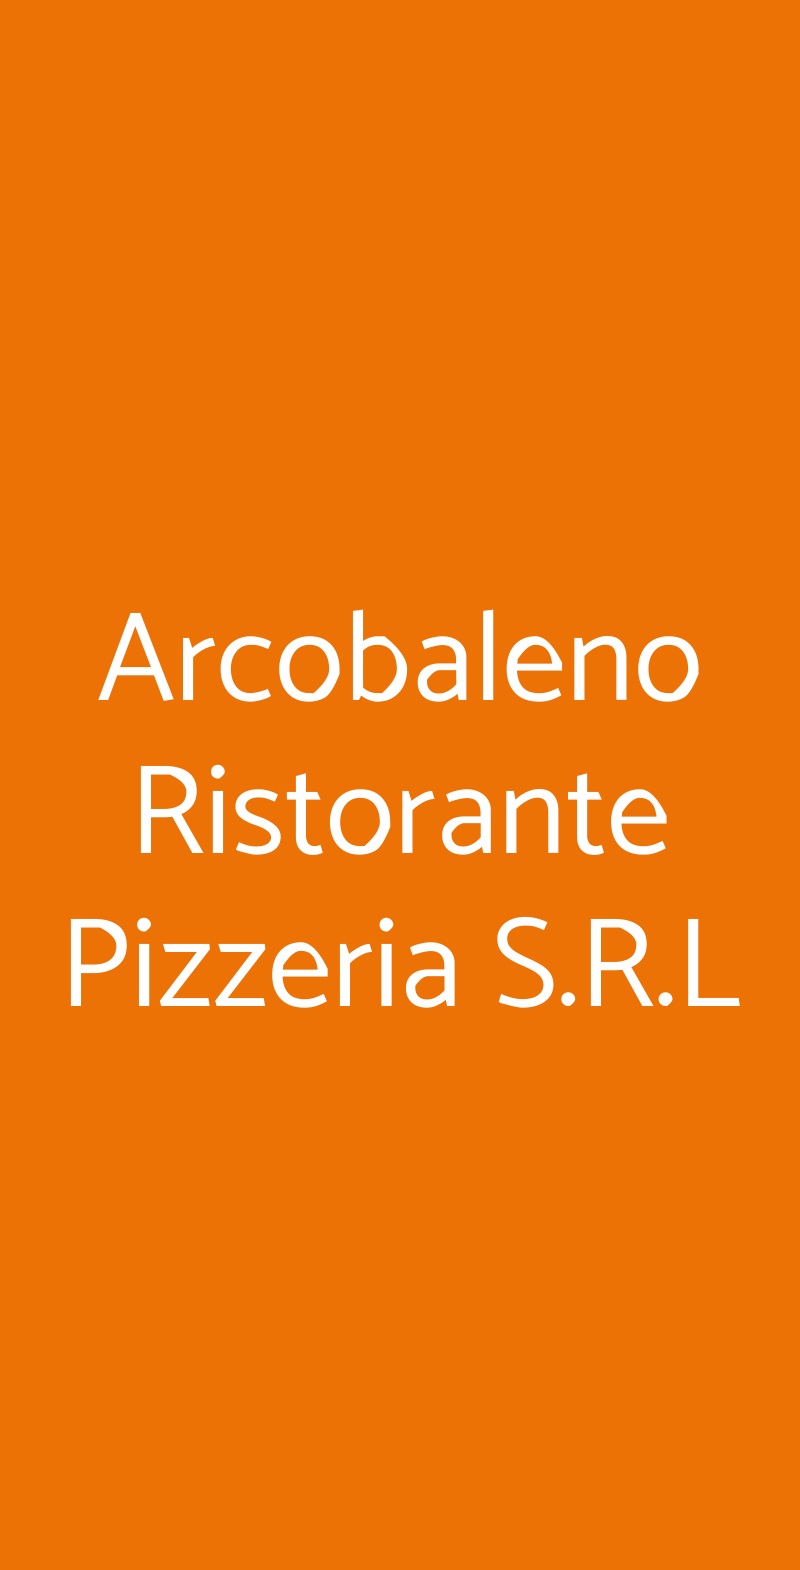 Arcobaleno Ristorante Pizzeria S.R.L Viareggio menù 1 pagina